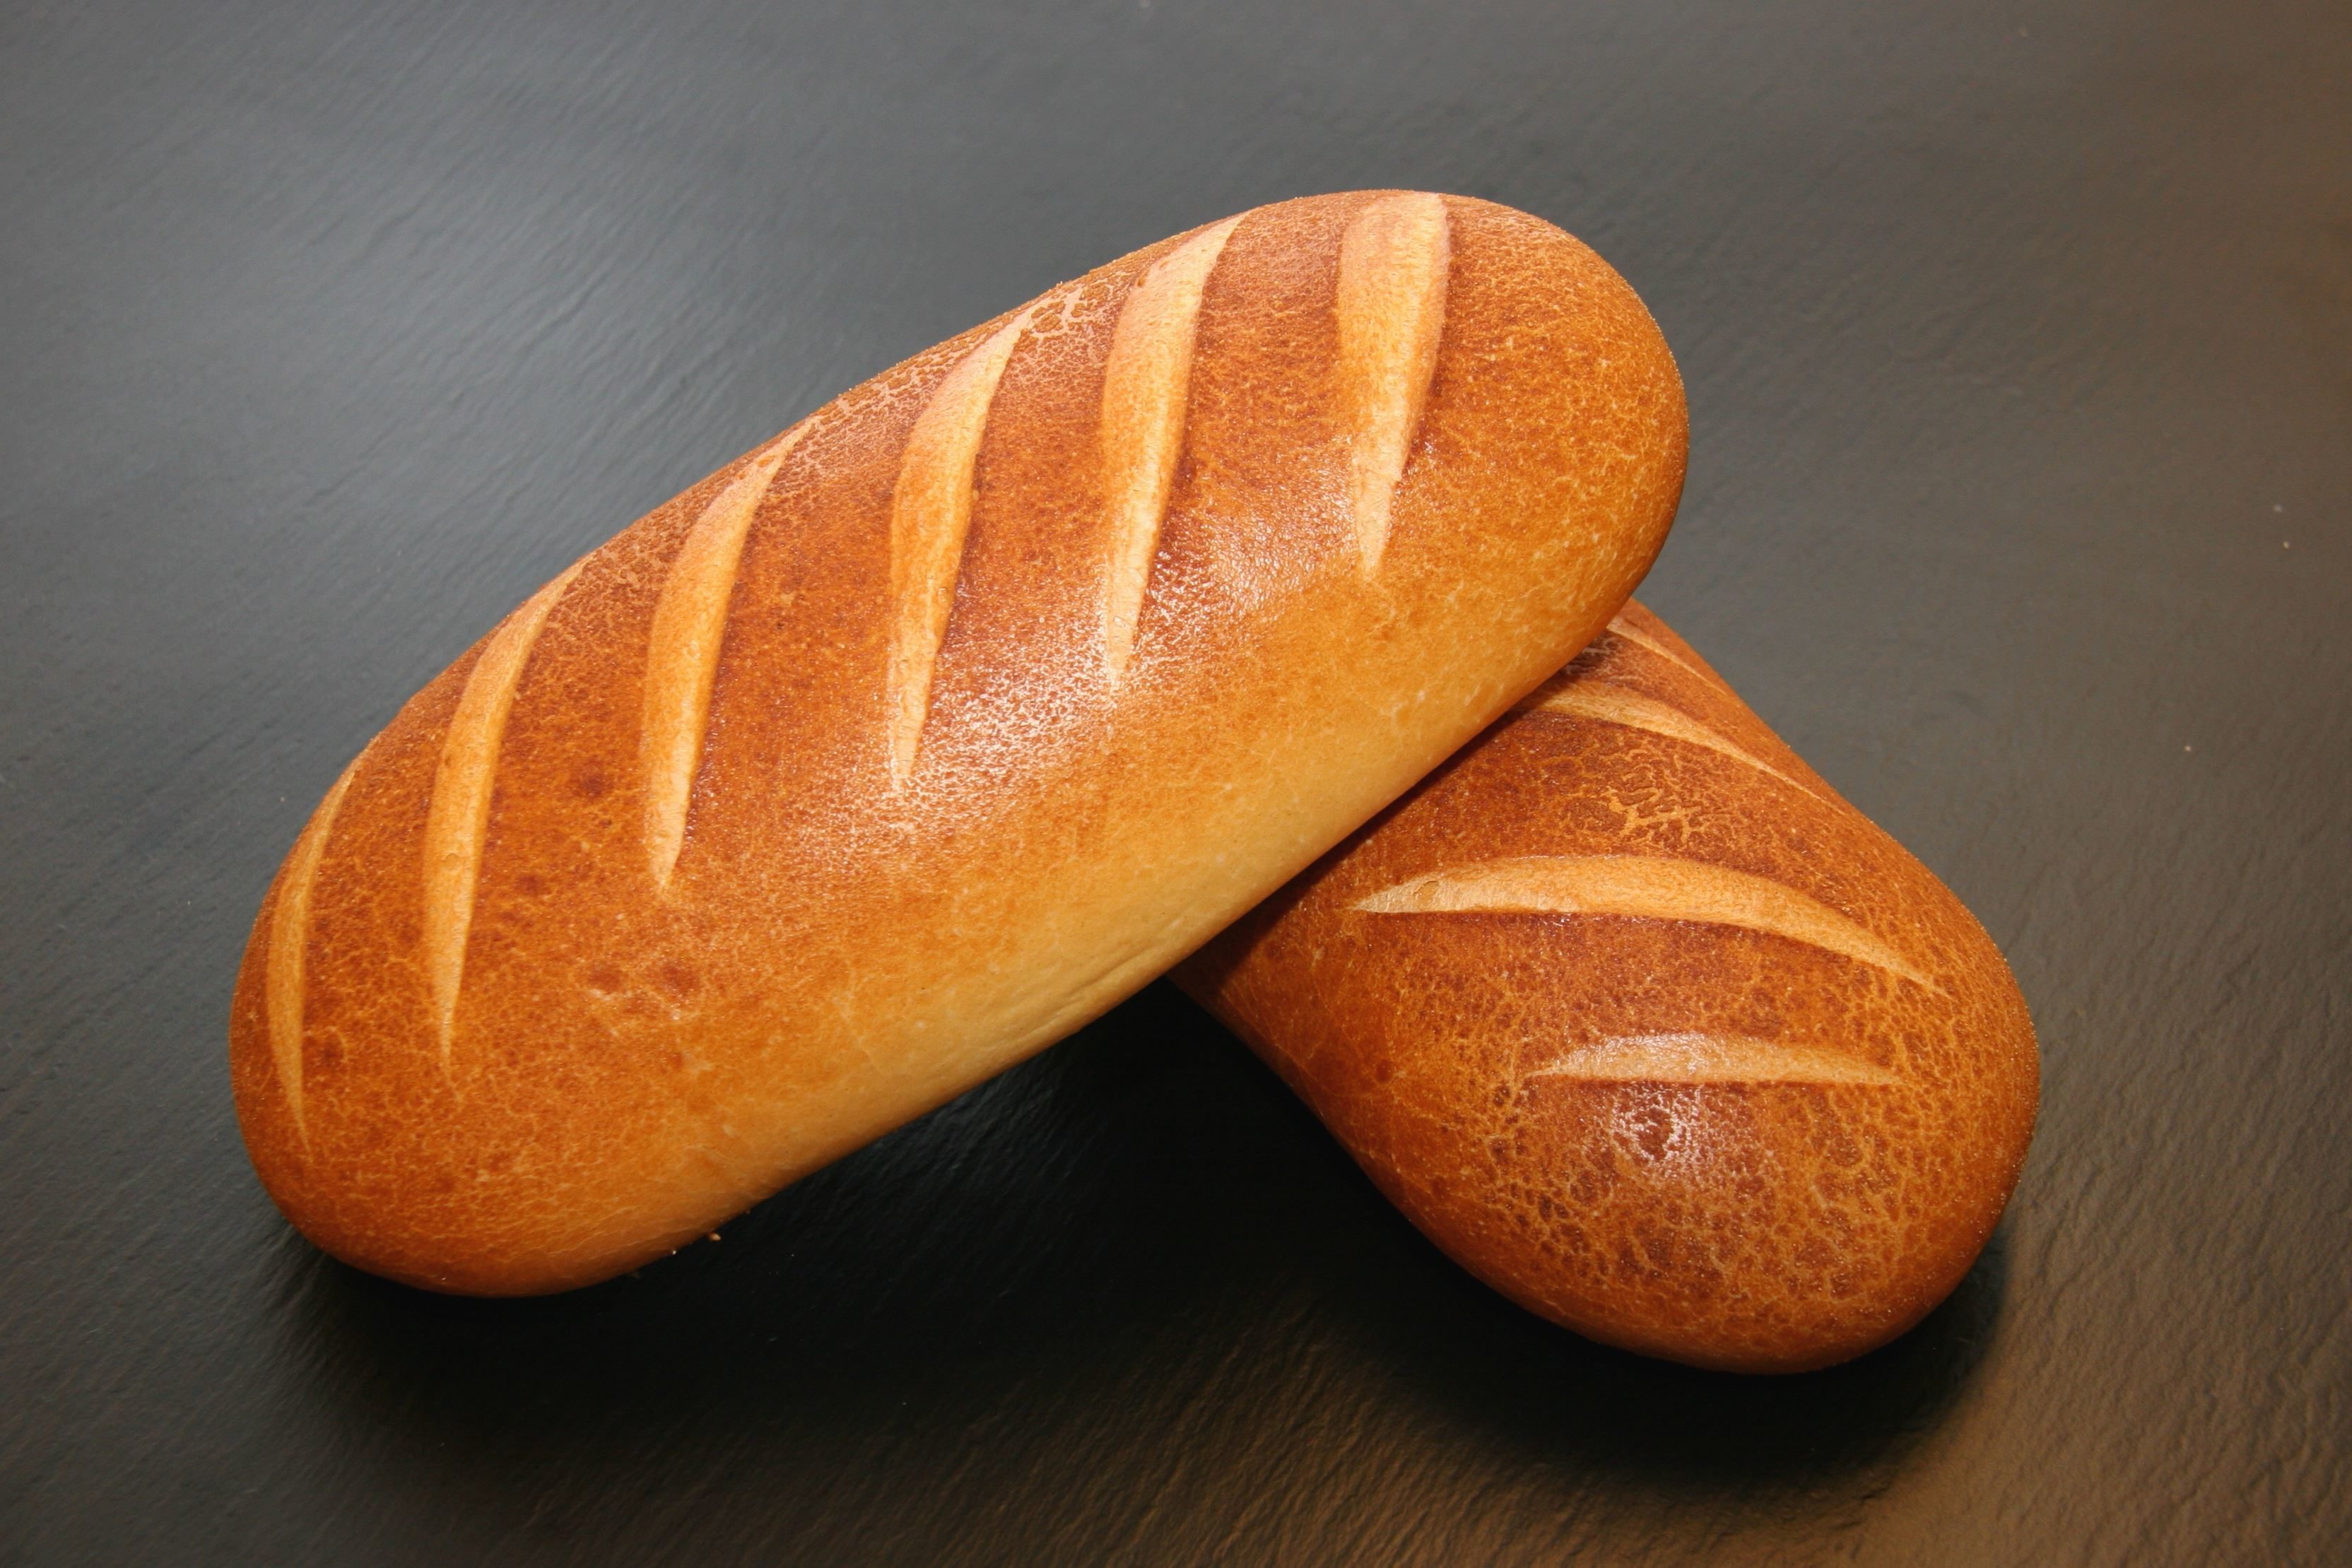 Kostenlose Bild: Brot, Toast, Frühstück, Brötchen, Essen, Laib